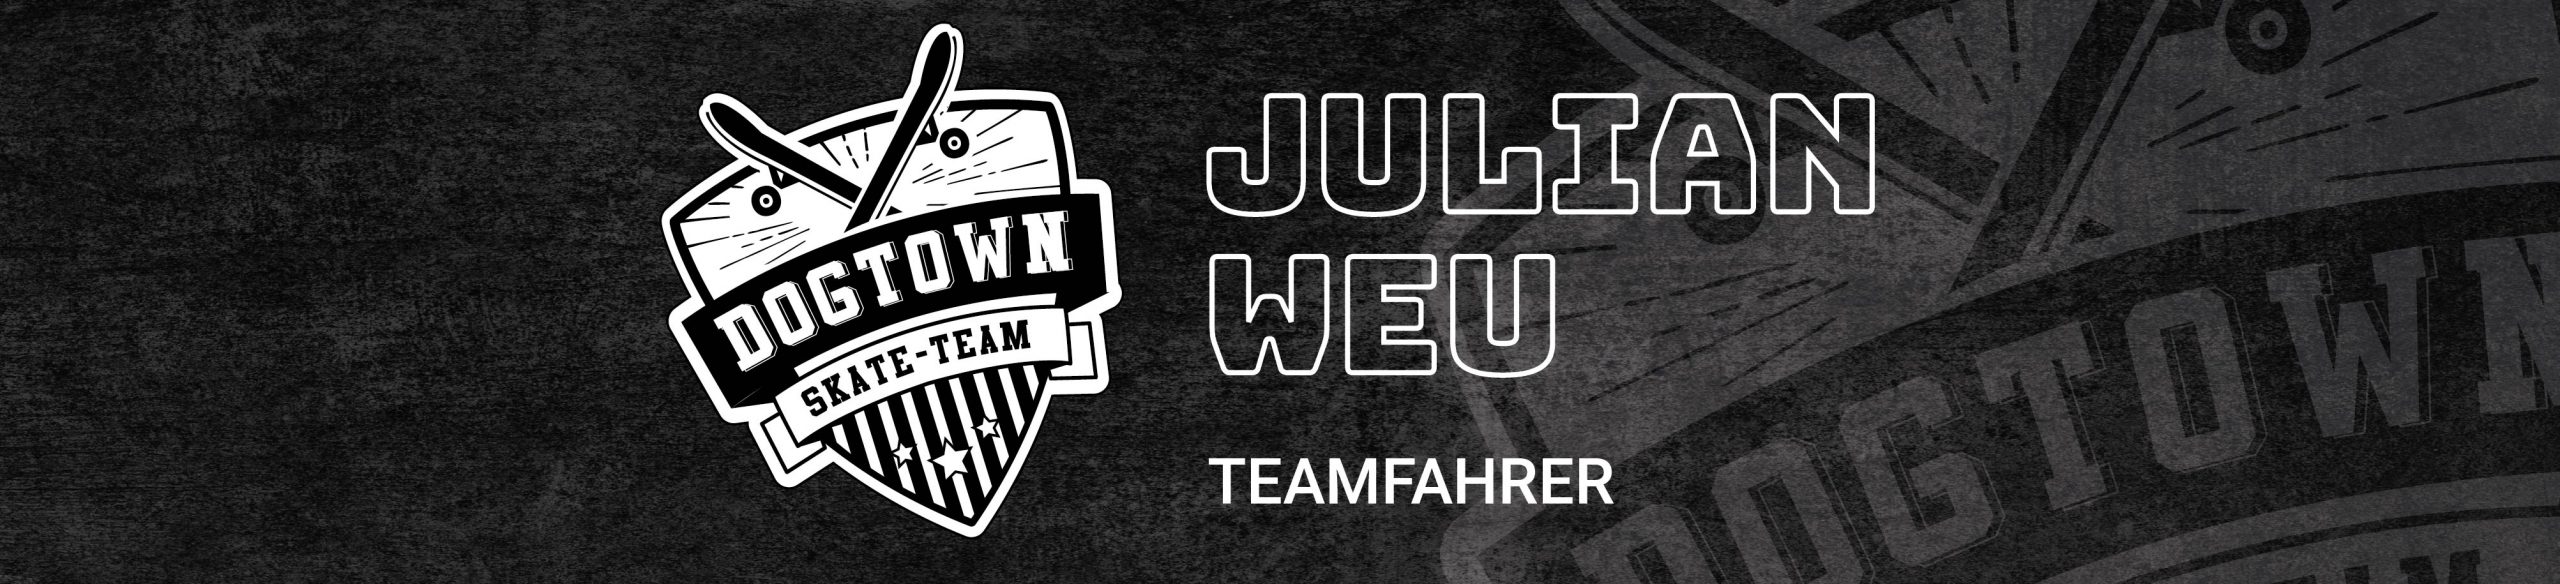 Julian Weu Teamfahrer Dogtown-Skateshop